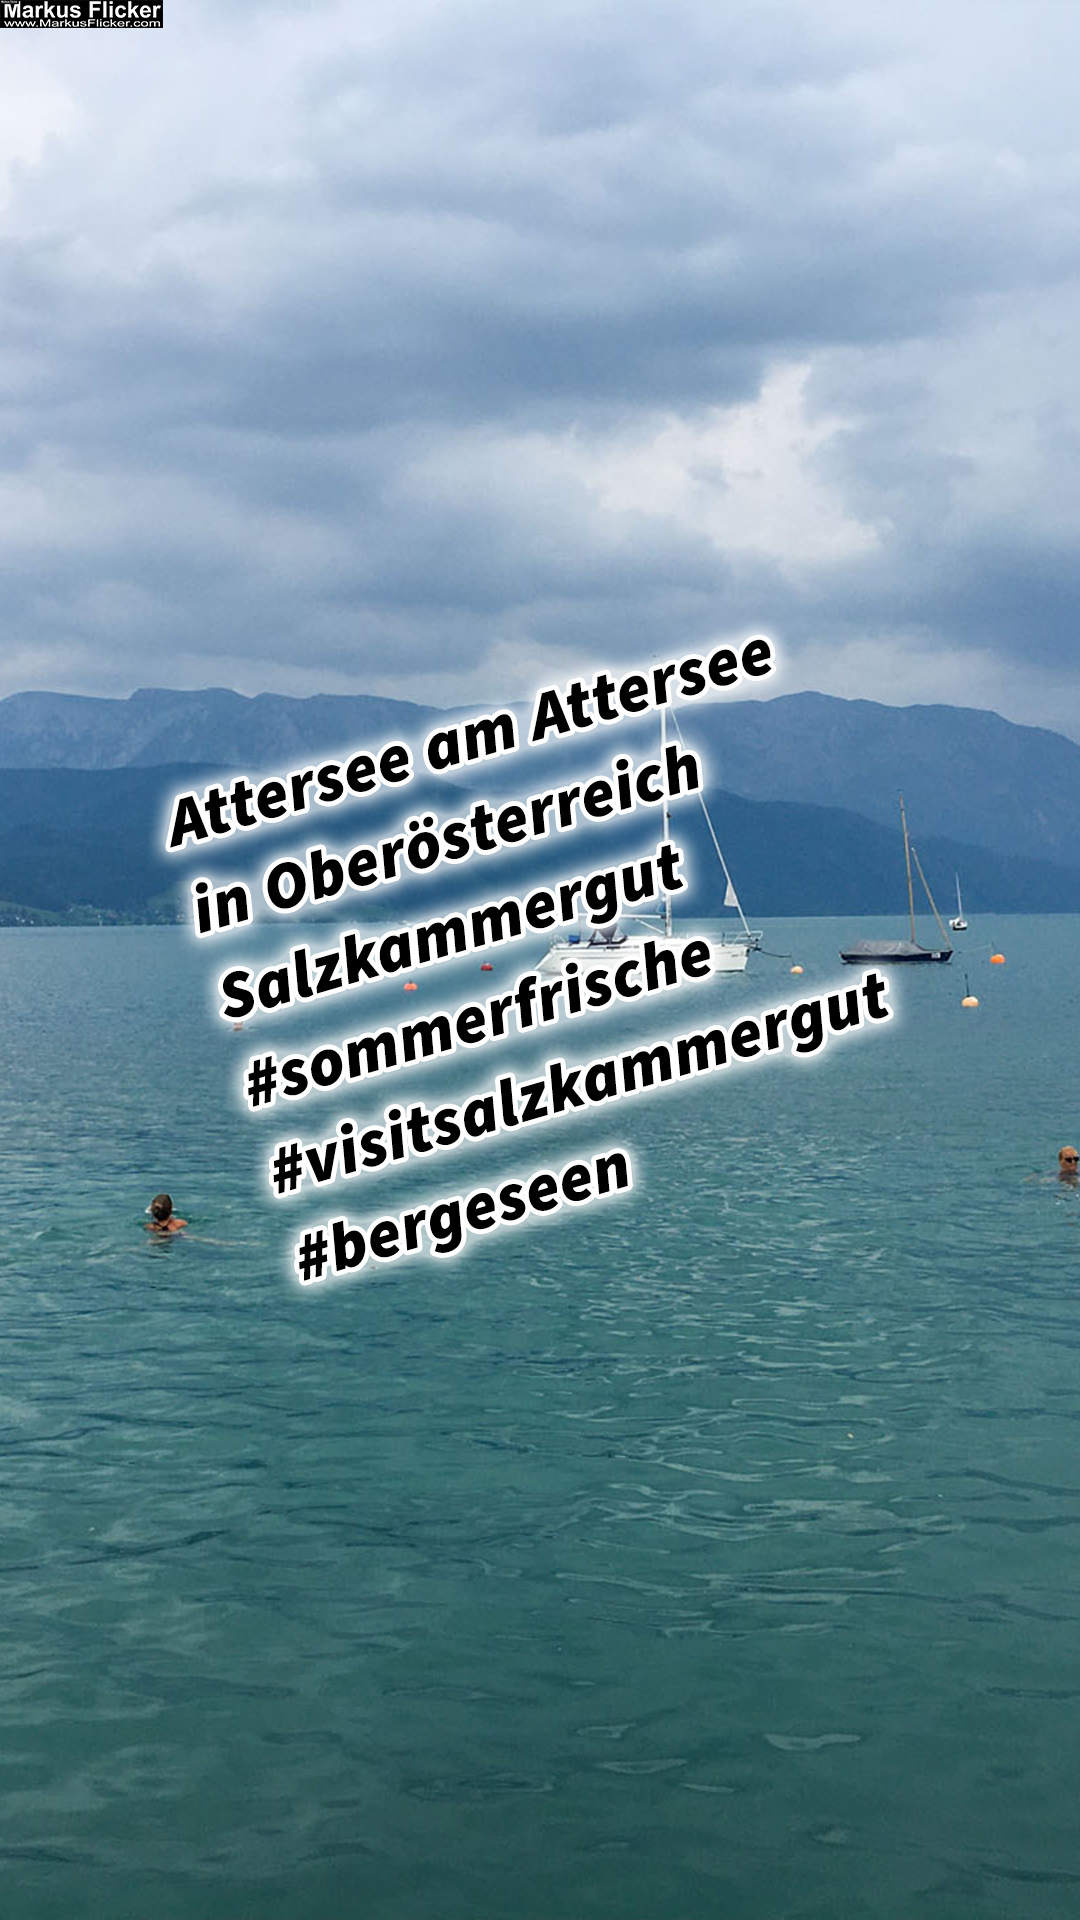 Attersee am Attersee in Oberösterreich Salzkammergut #sommerfrische #visitsalzkammergut #bergeseen St. Georgen im Attergau